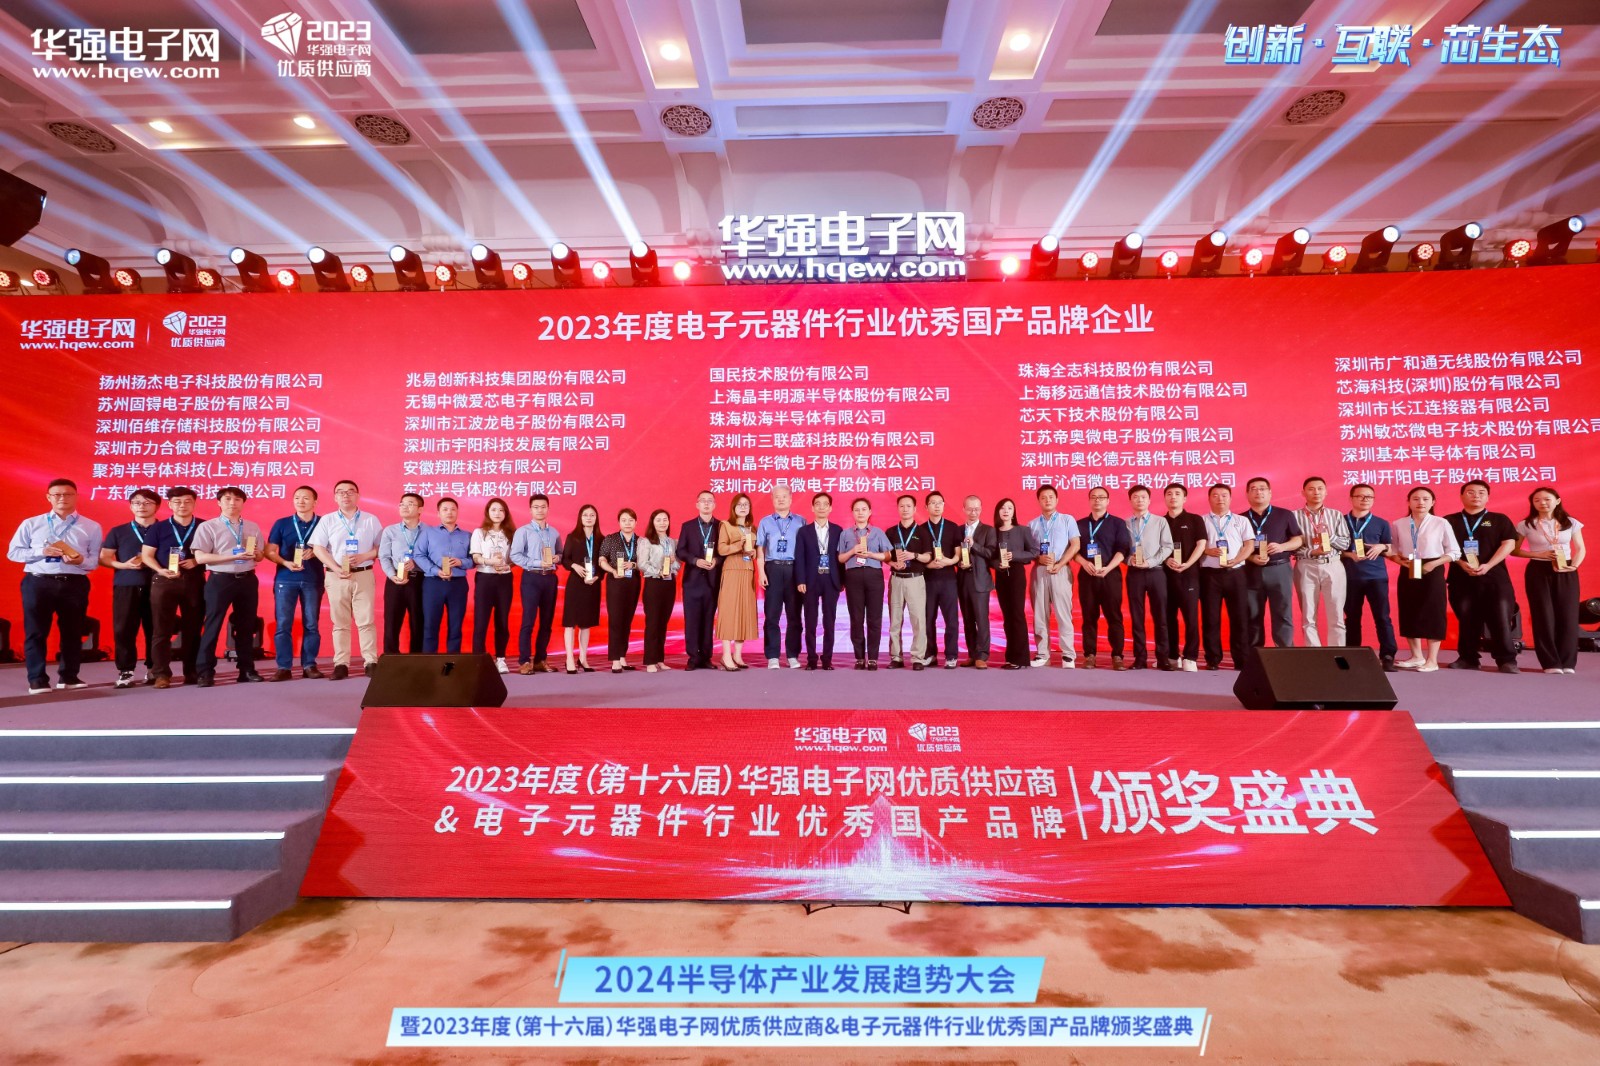 消息显示:2023（第九届）中国储运发展高峰论坛暨首届全国通道物流创新发展大会在重庆召开 3